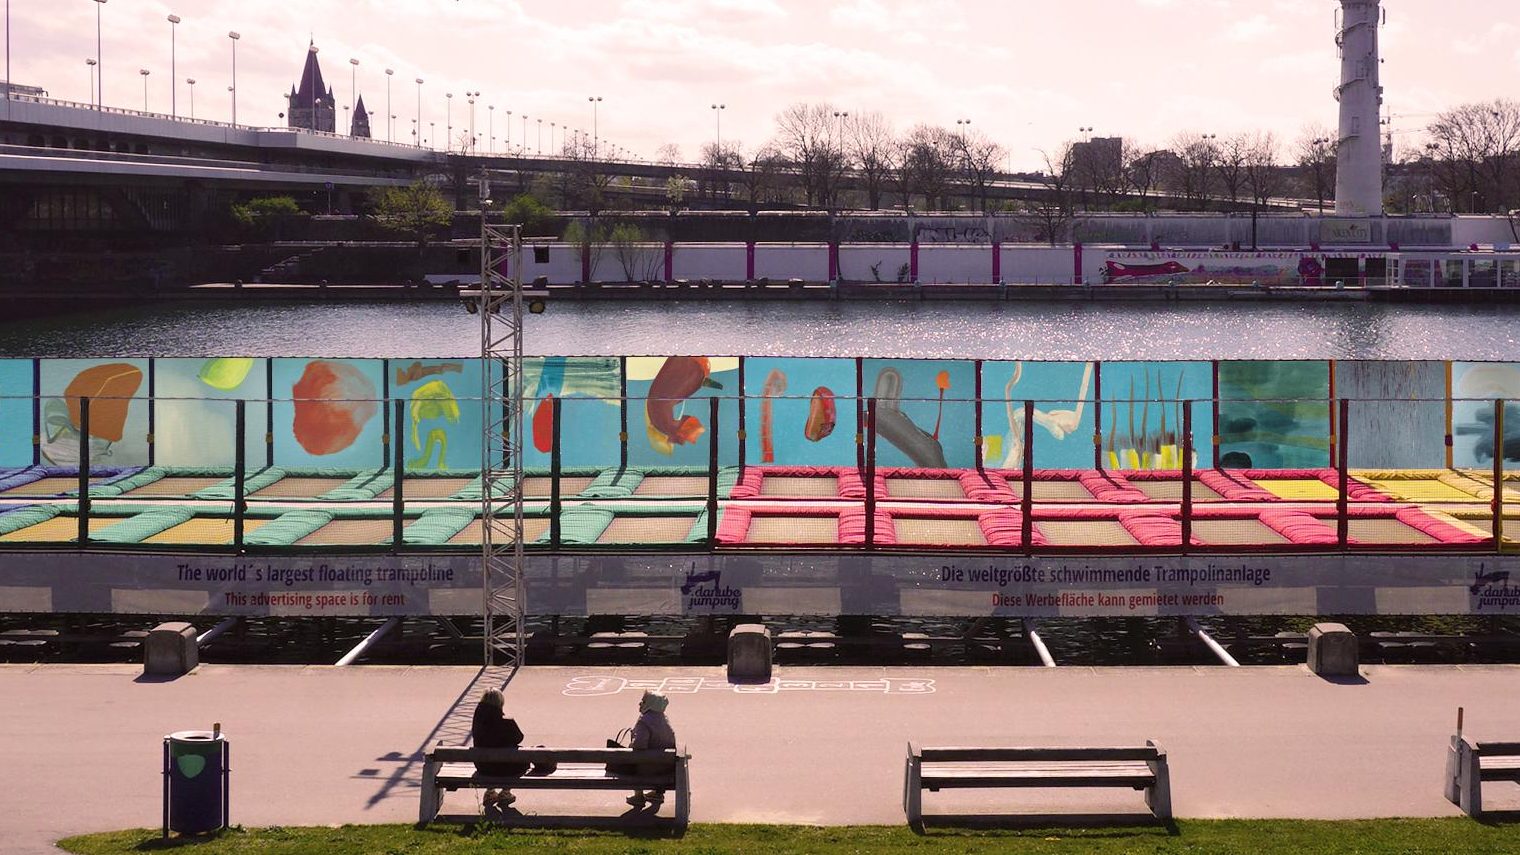 Vernissage Air Condition: Über 50 m lange Kunstinstallation an der Neuen Donau